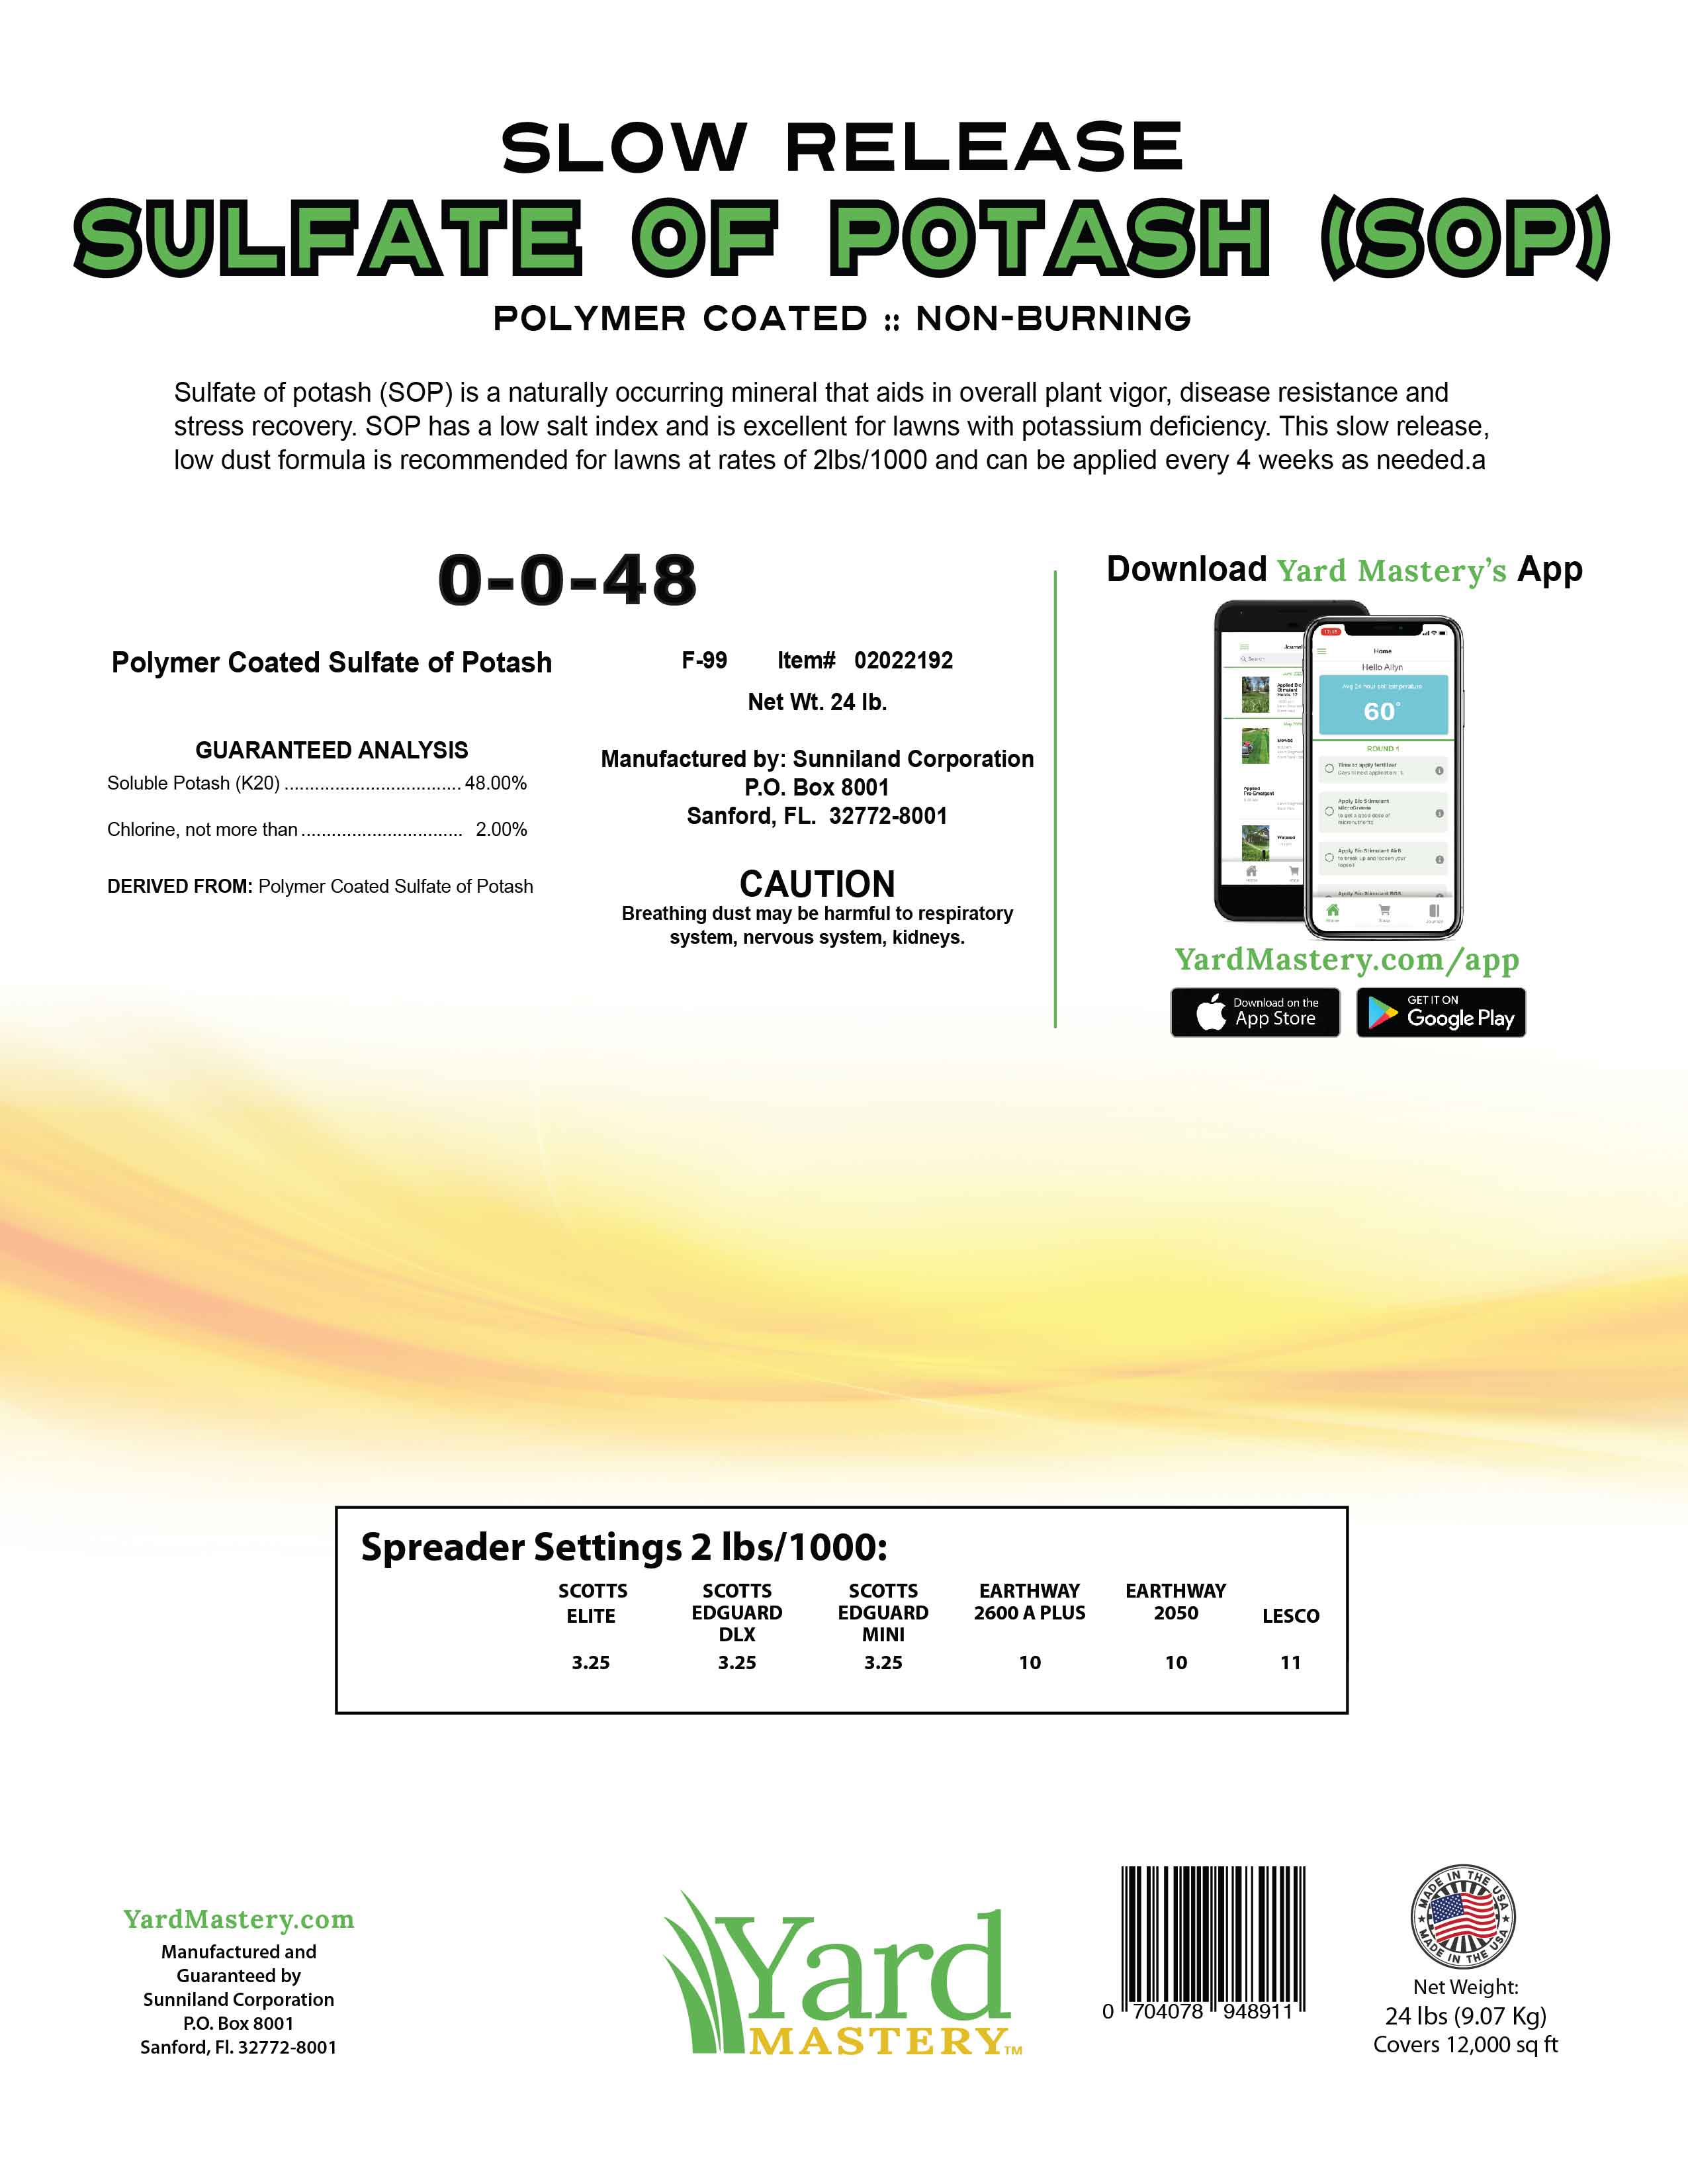 0-0-48 SOP Sulphate of Potash - Granular Lawn Fertilizer | Yard Mastery